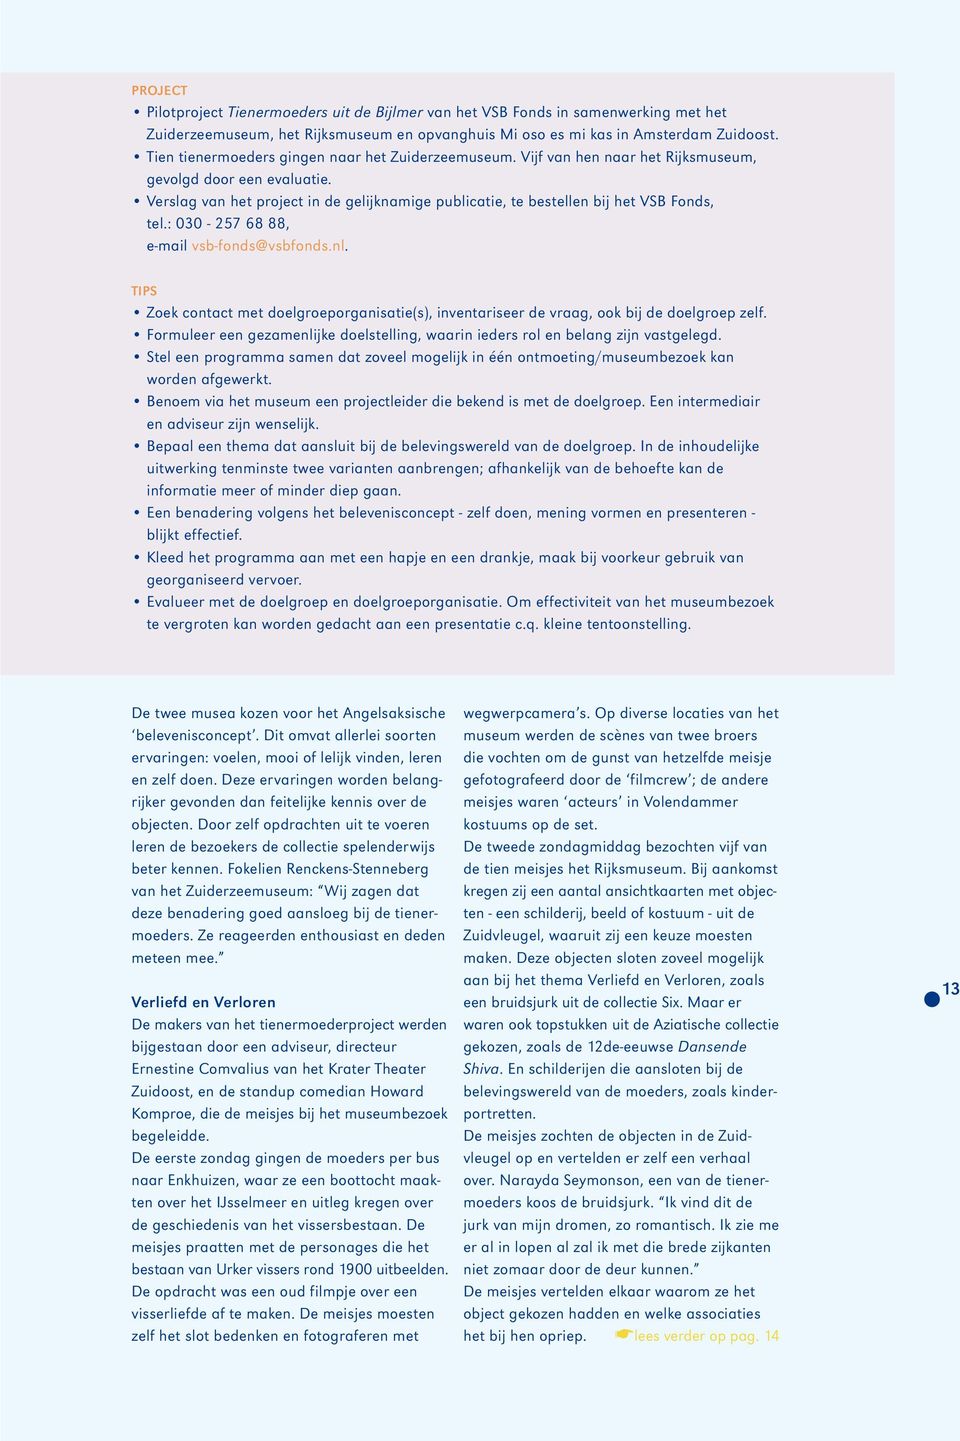 Verslag van het project in de gelijknamige publicatie, te bestellen bij het VSB Fonds, tel.: 030-257 68 88, e-mail vsb-fonds@vsbfonds.nl.